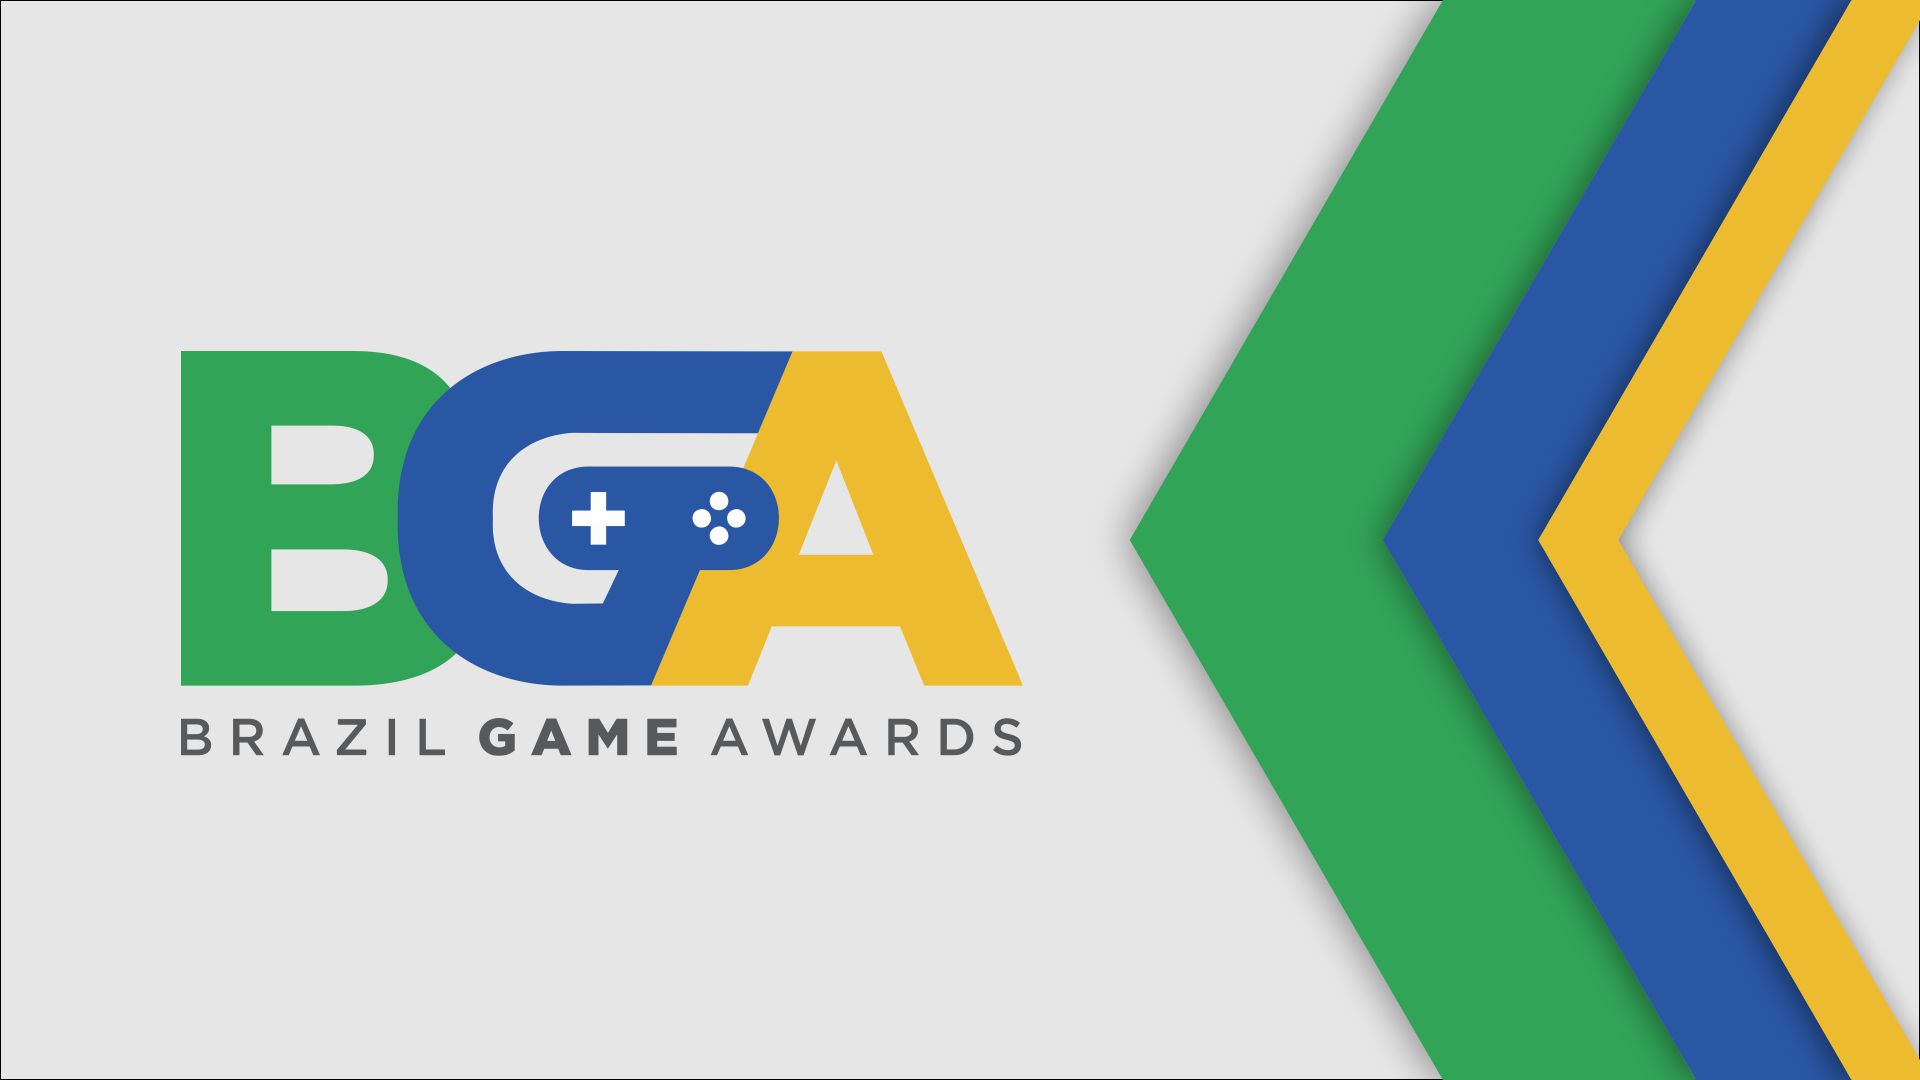 The Game Awards 2022: Vencedores e nomeados